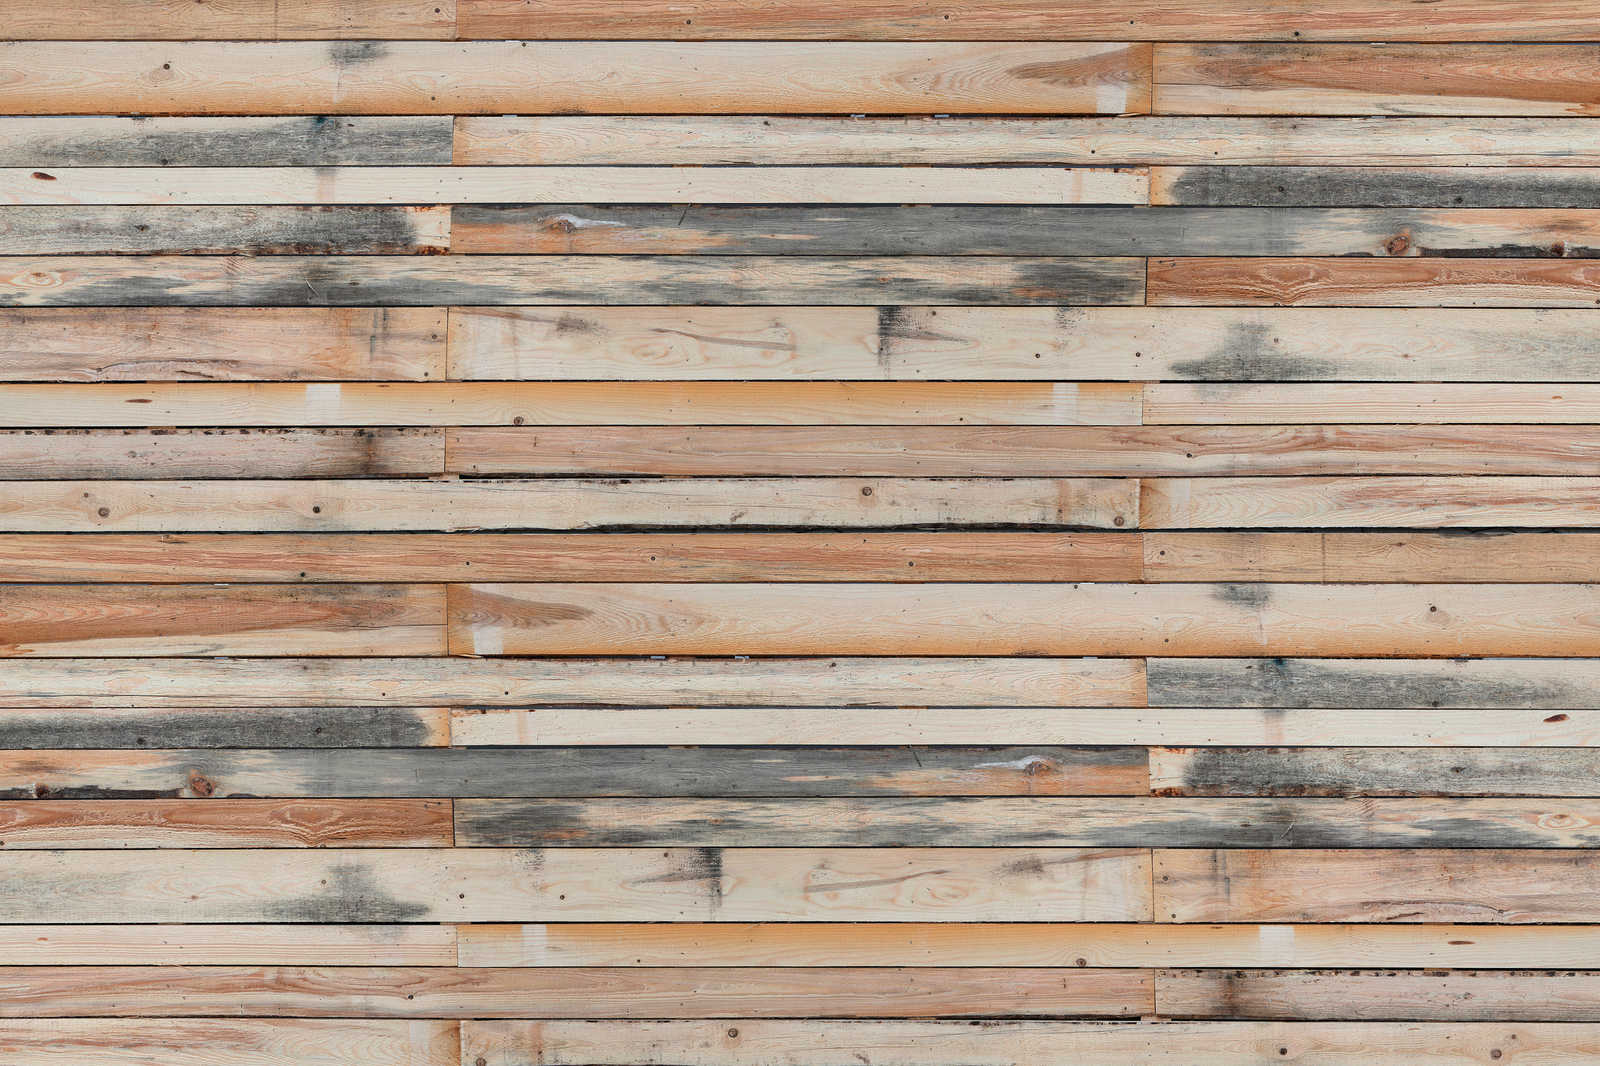             Planches de bois usées - Tableau sur toile au look usé pour mettre en valeur le mur - 0,90 m x 0,60 m
        